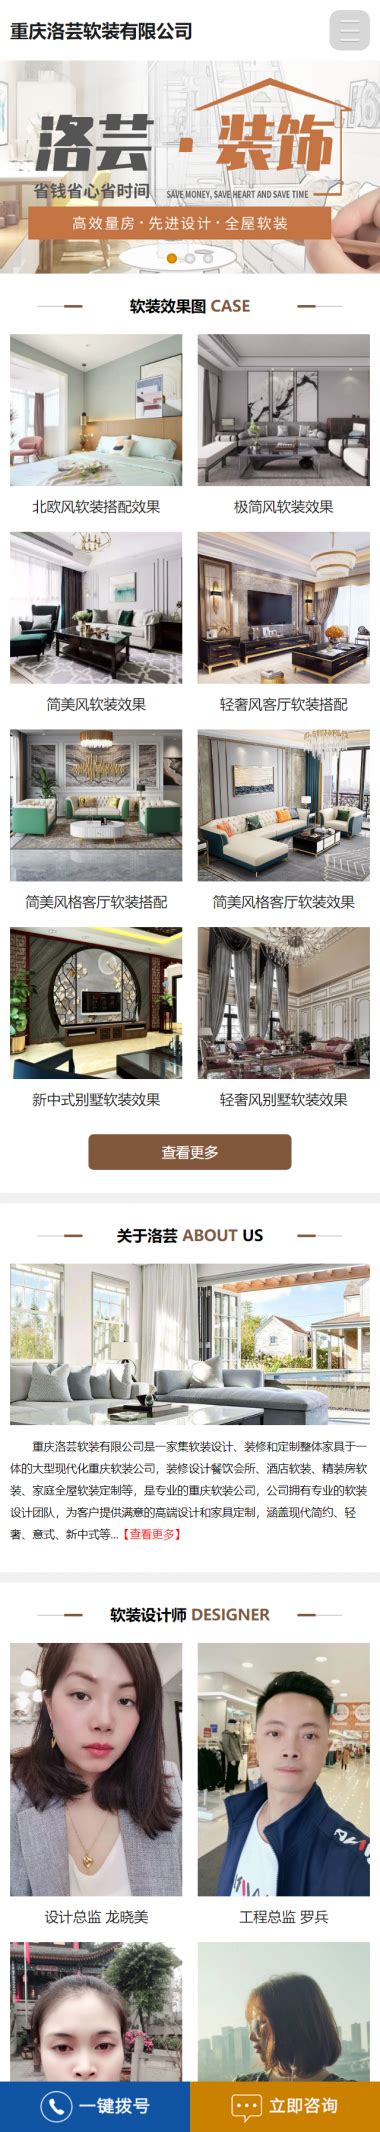 重庆营销型网站建设 重庆简约型网站制作 重庆高端定制网站开发高清大图